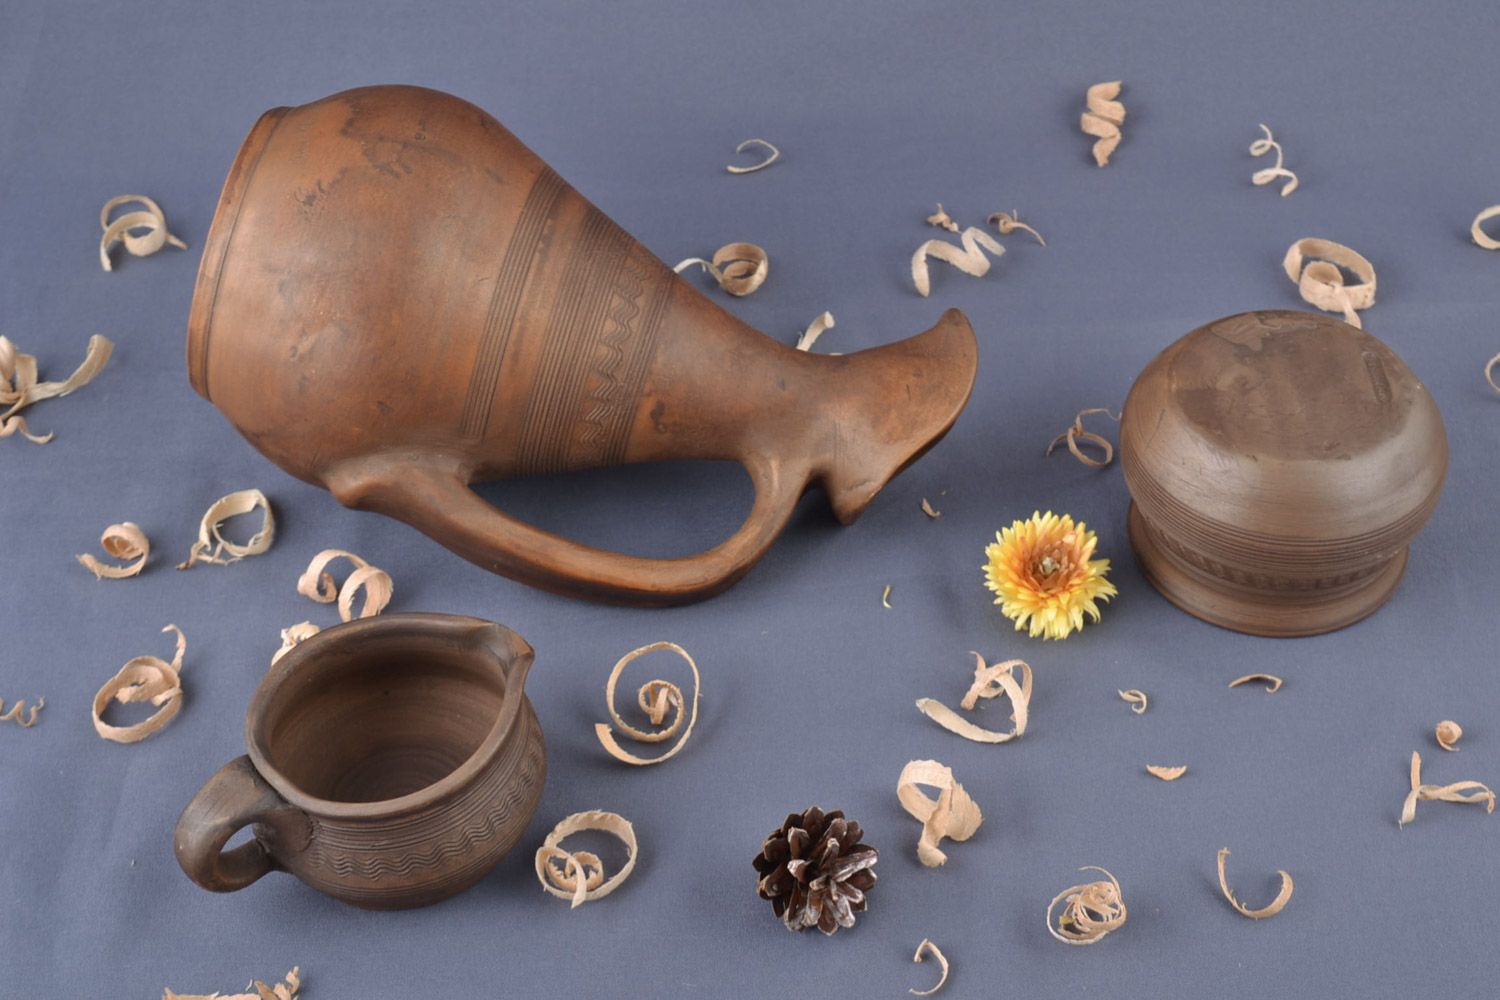 Juego de vajilla artesanal de salsera, salero y jarra de cerámica hechos a mano foto 1